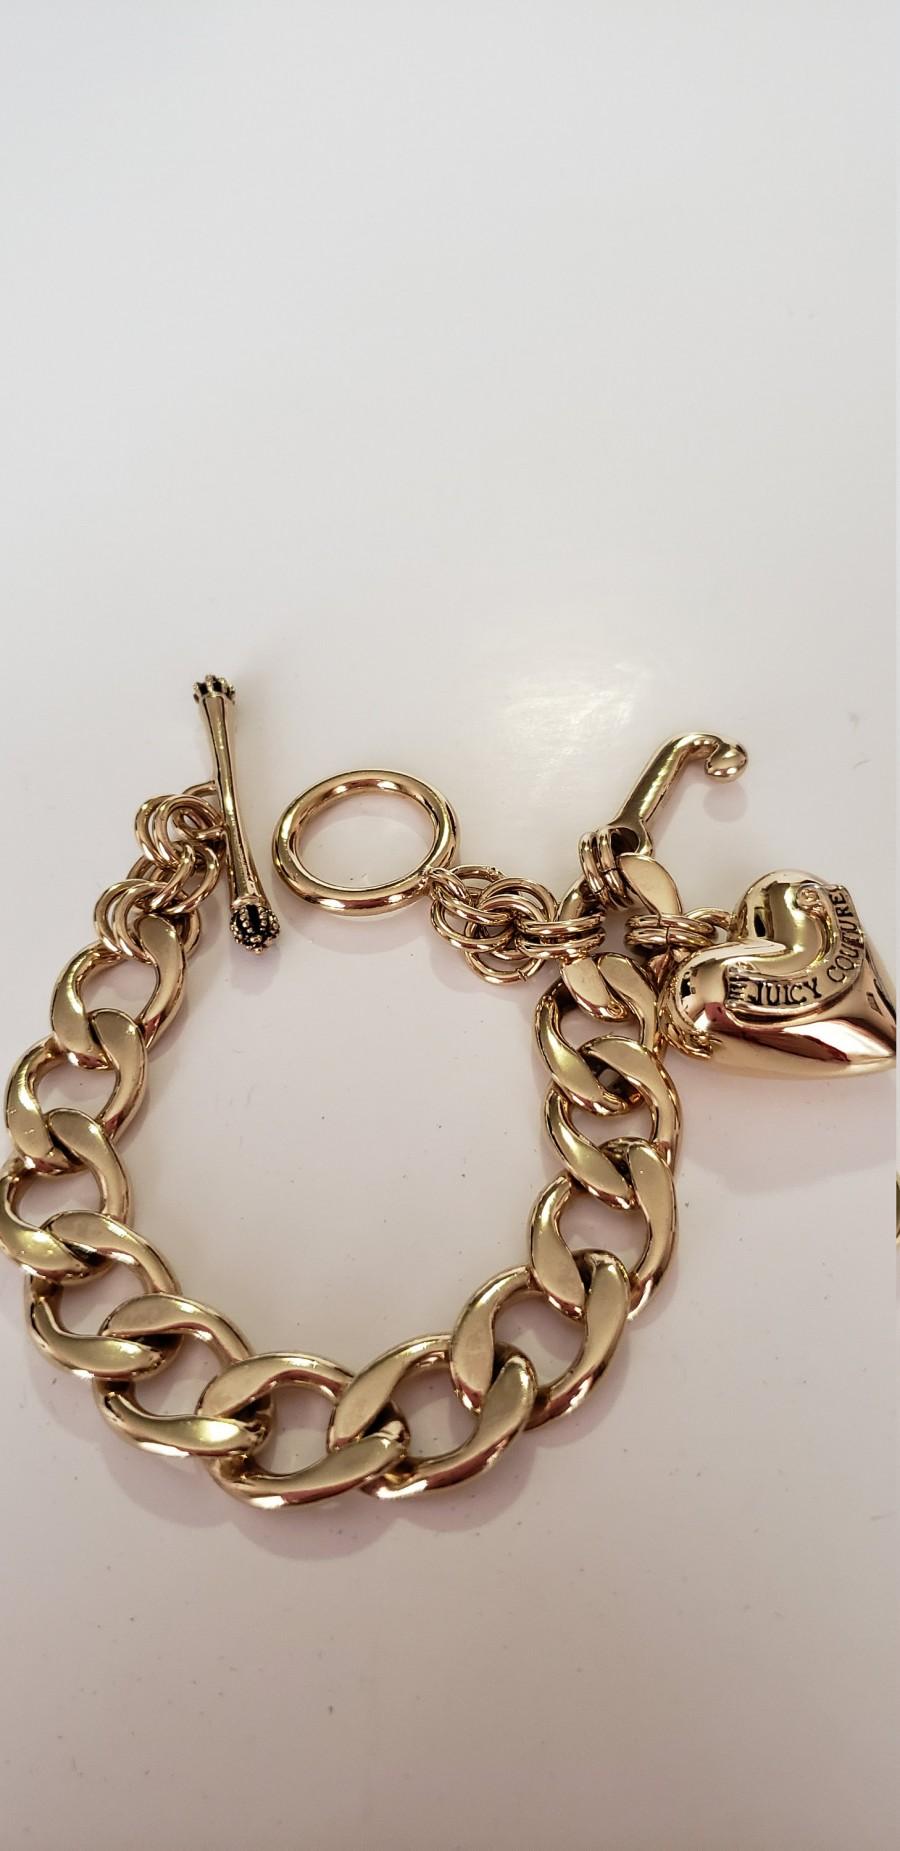 زفاف - Juicy Couture Bracelet.Charm Bracelet.Gold Ton Bracelet.Vintage Charm Bracelet.JC Bracelet.